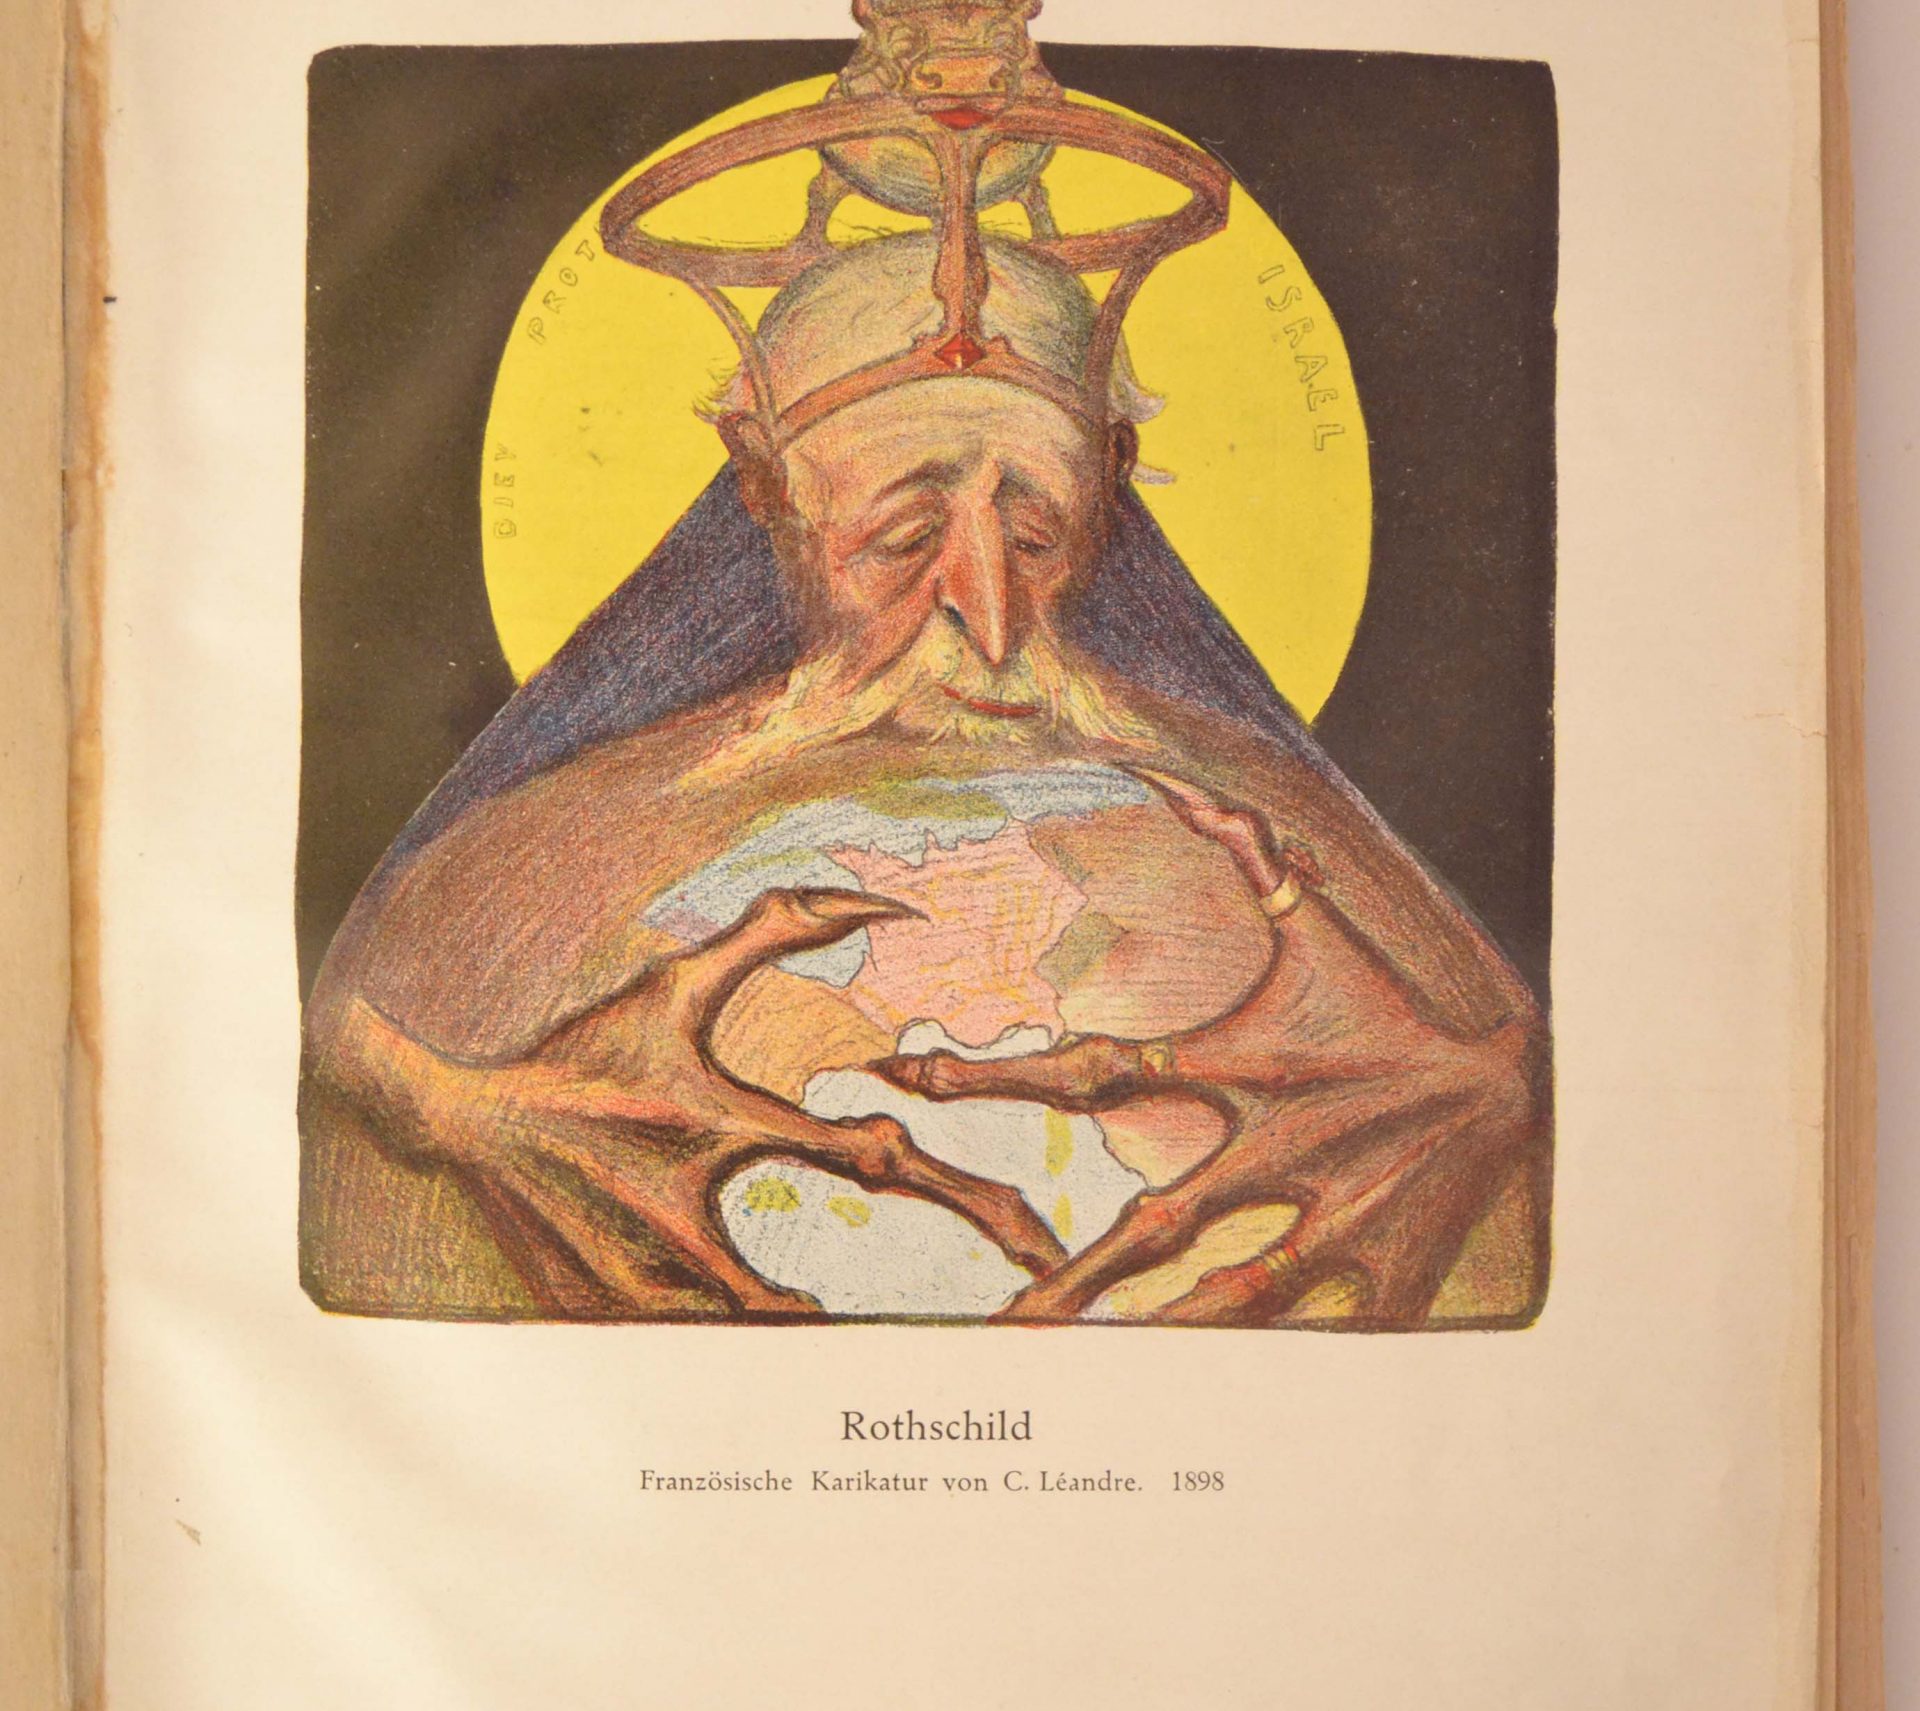 Léandre, Charles. «Rothschild», Le Rire, 1898. In Die Juden in der Karikatur. Source: Musée de l’Holocauste Montréal